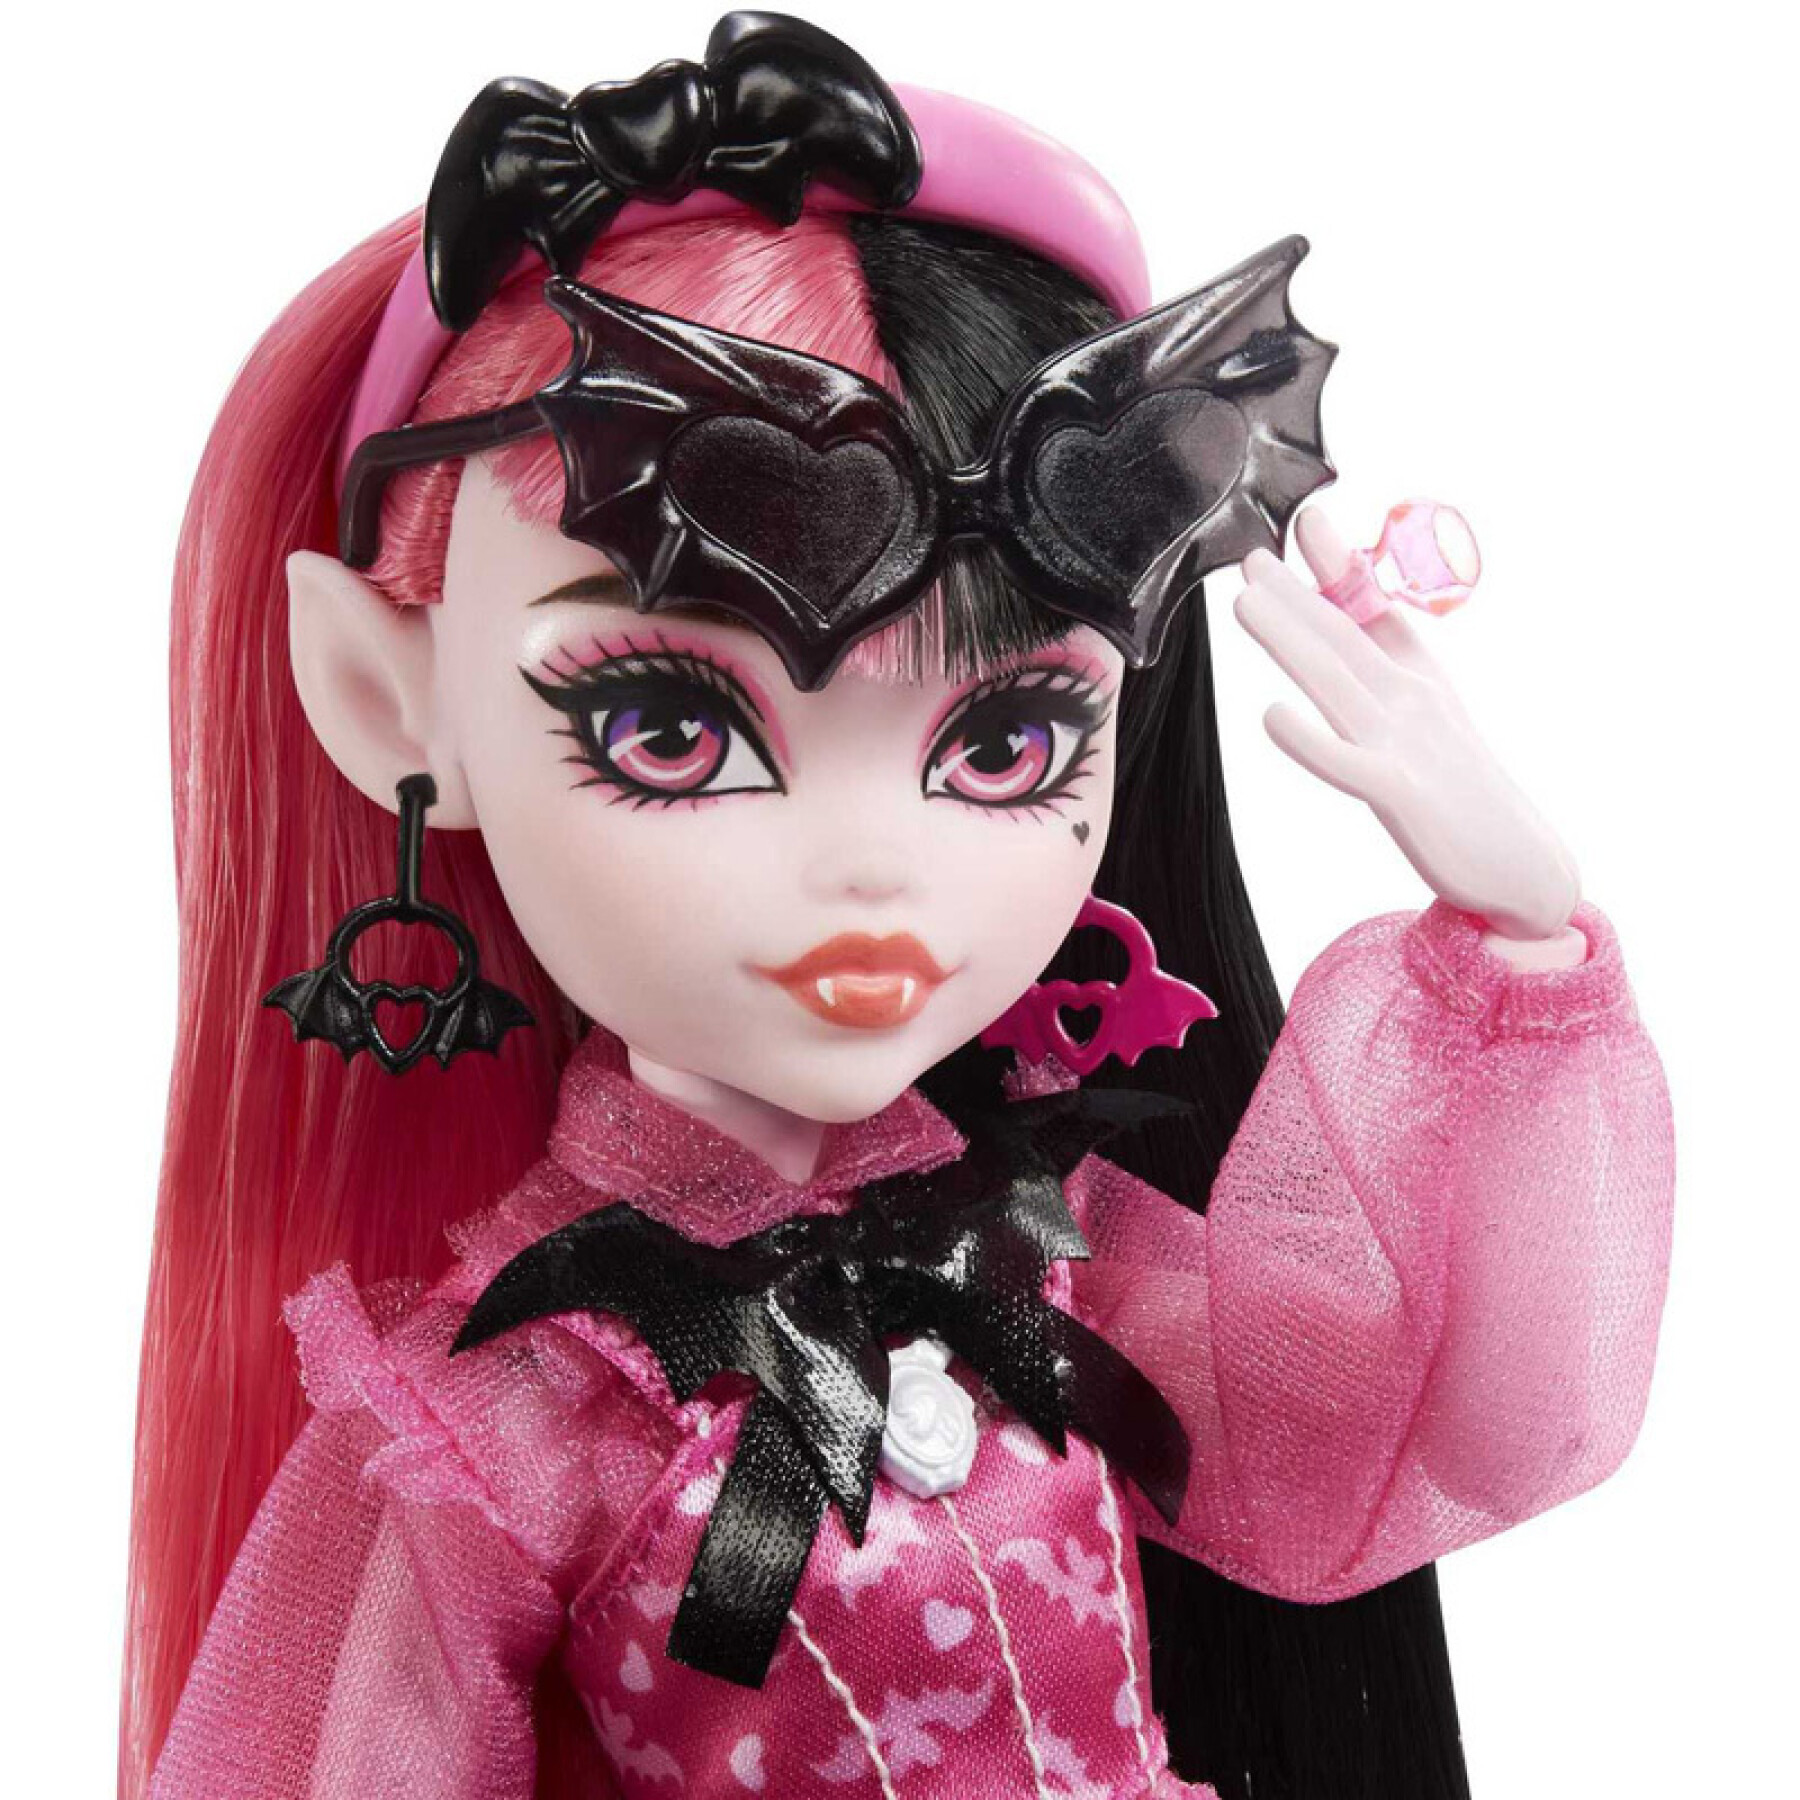 Doll Mattel France Monster High Dracula